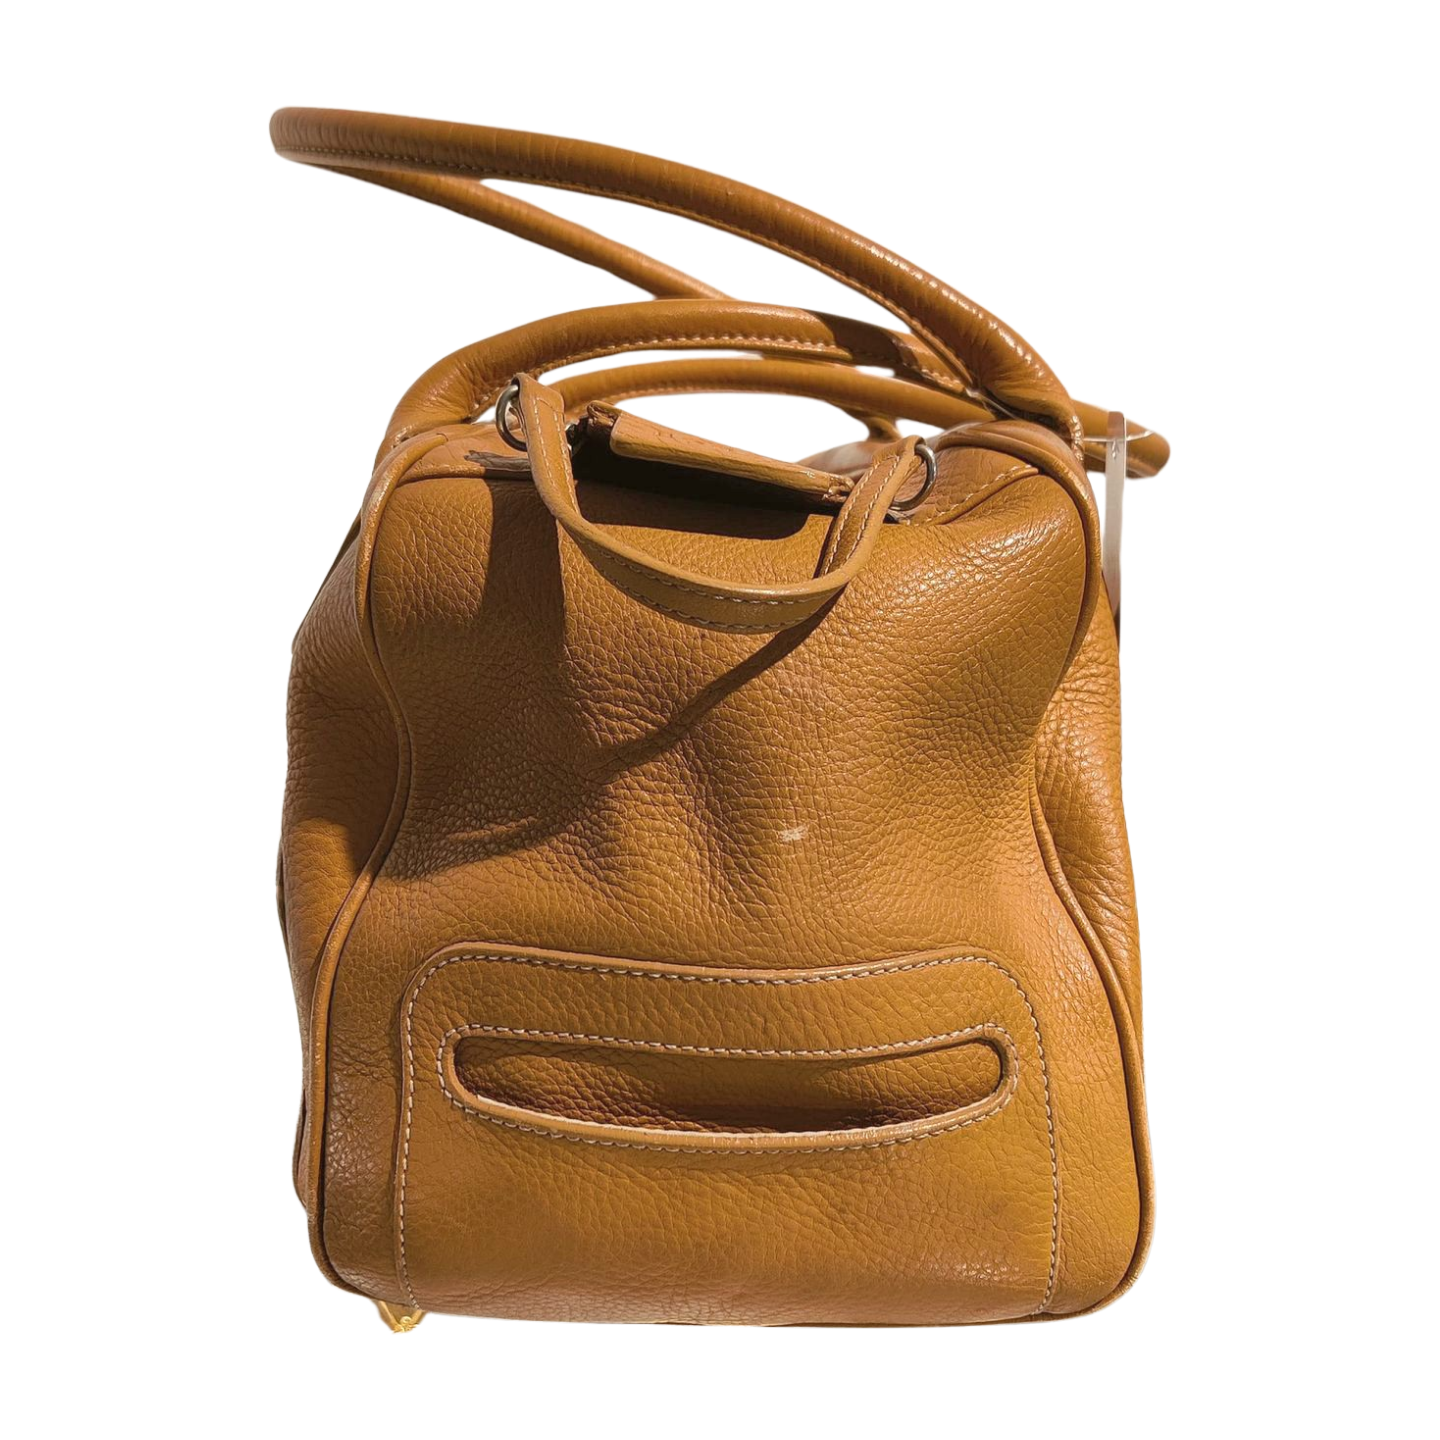 Hogan Pan Am Tan Leather Handbag